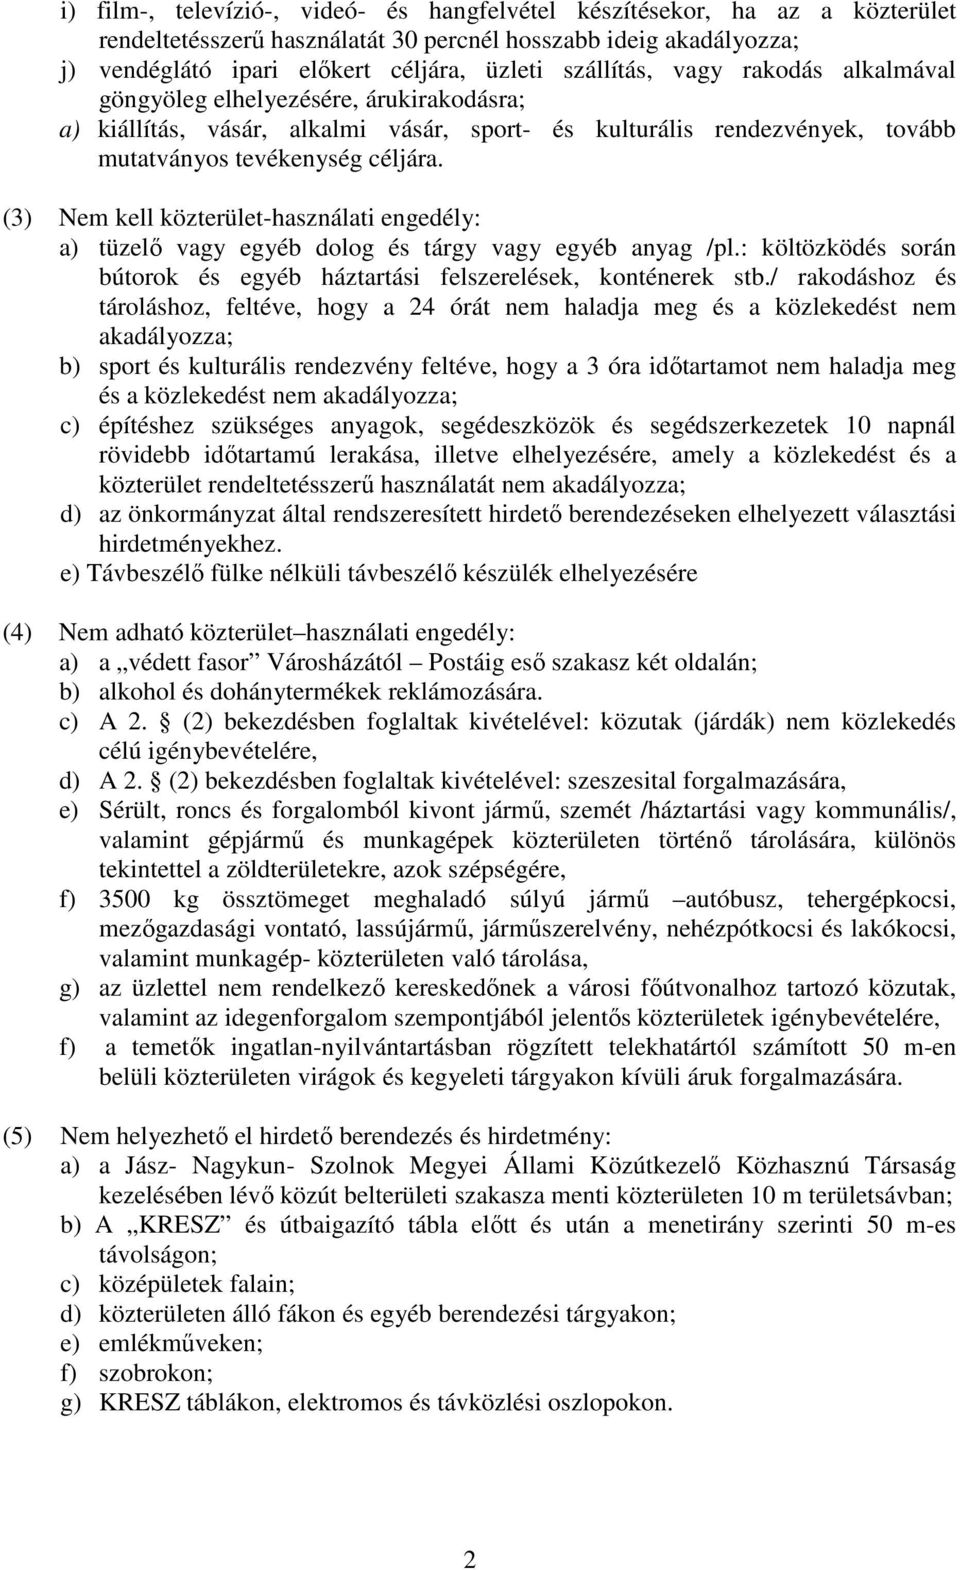 (3) Nem kell közterület-használati engedély: a) tüzelı vagy egyéb dolog és tárgy vagy egyéb anyag /pl.: költözködés során bútorok és egyéb háztartási felszerelések, konténerek stb.